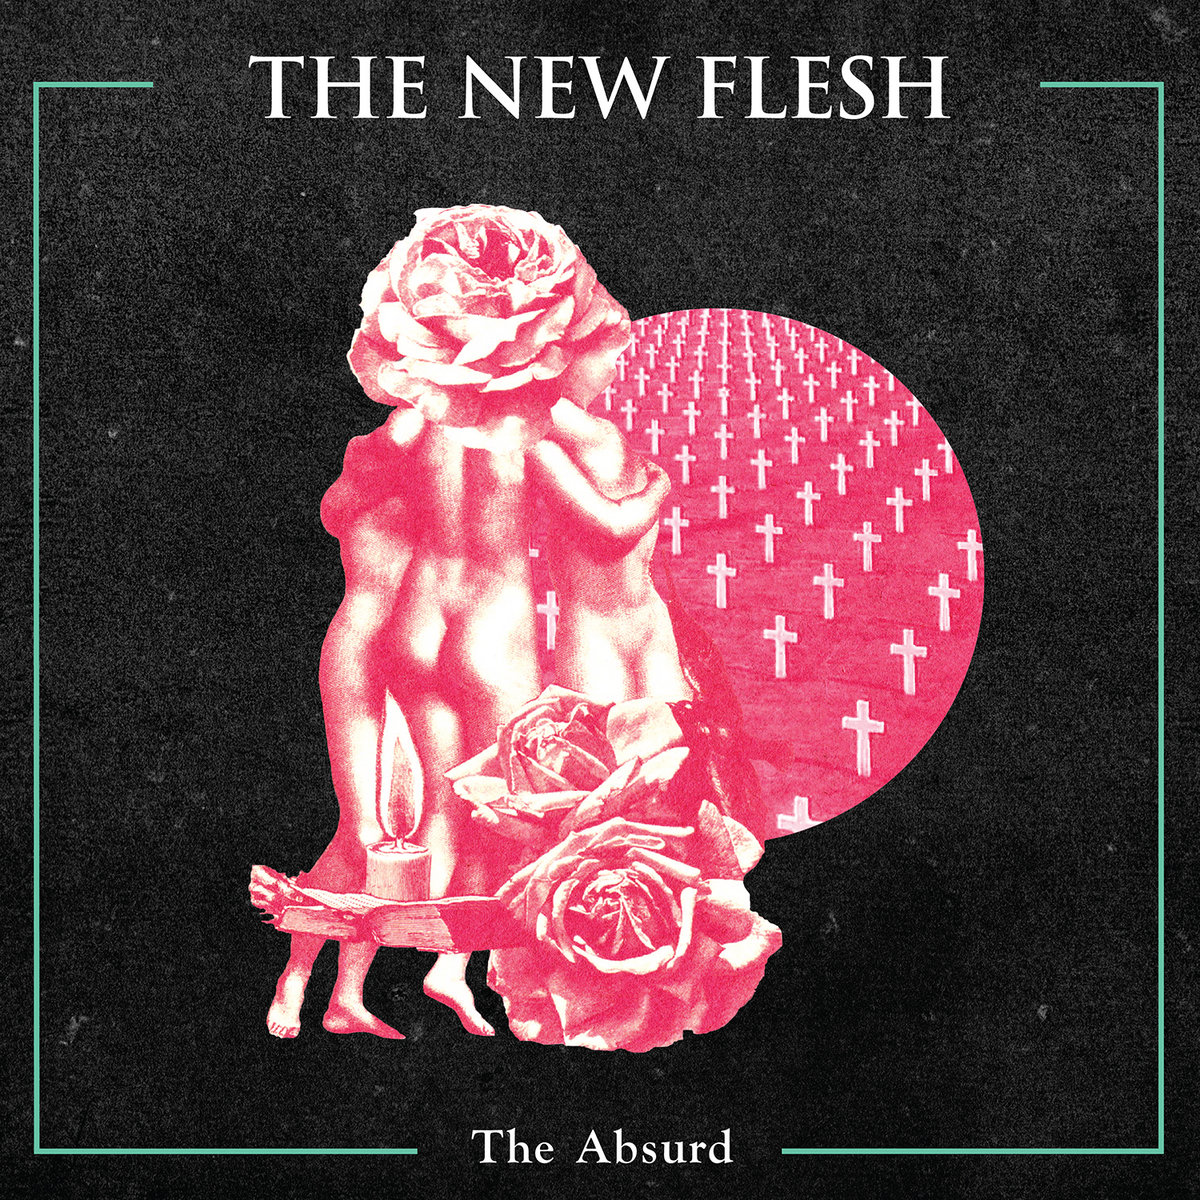 New flesh current